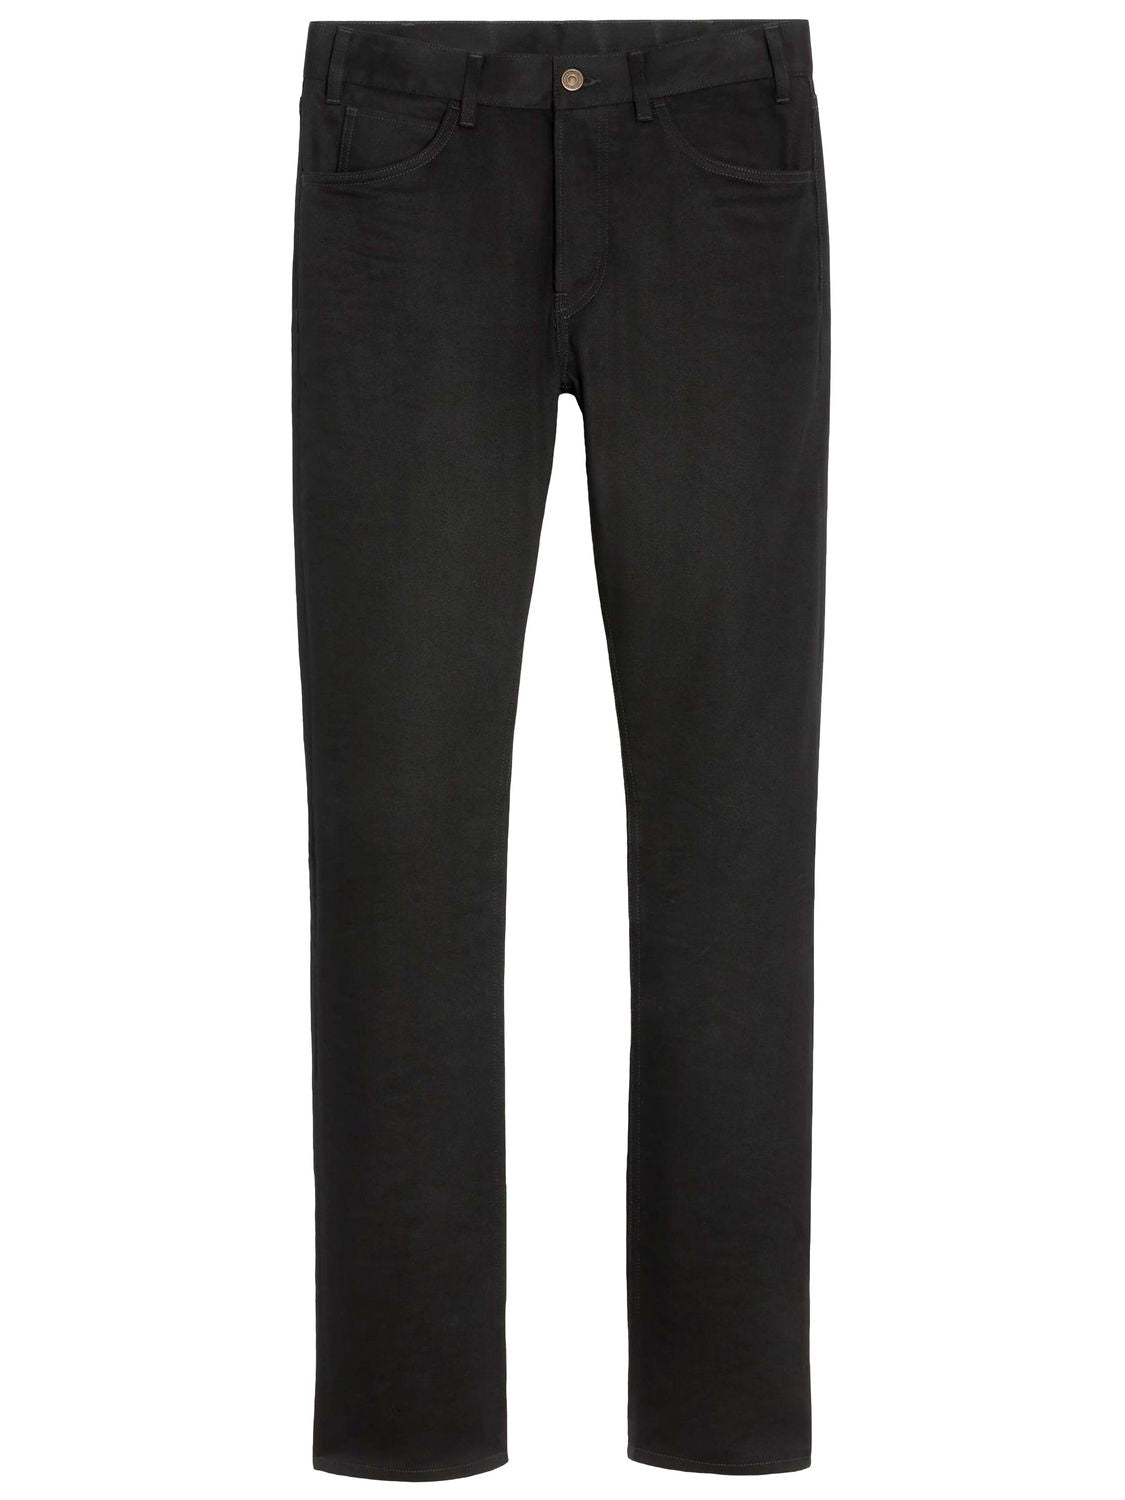 Quần jeans dài hàng nam màu đen phong cách ôm sát FW23